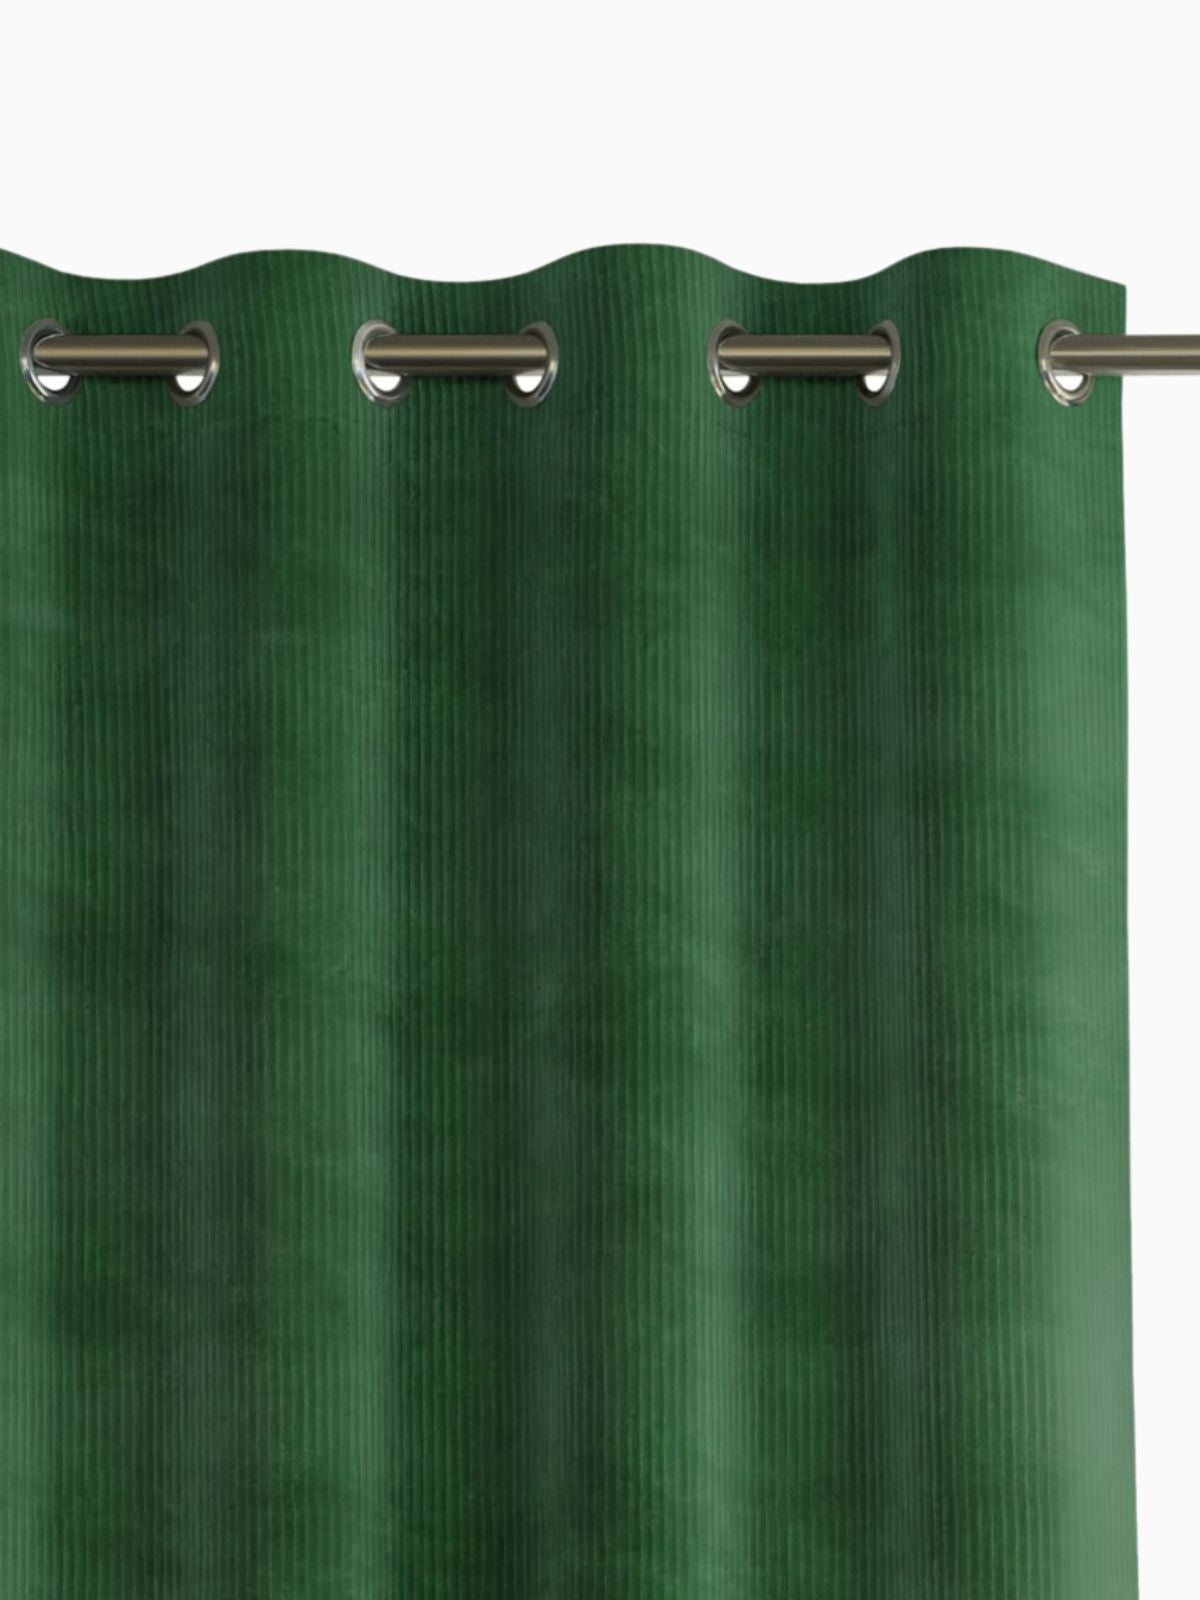 Tenda Duffy in colore verde 140x250 cm.-1